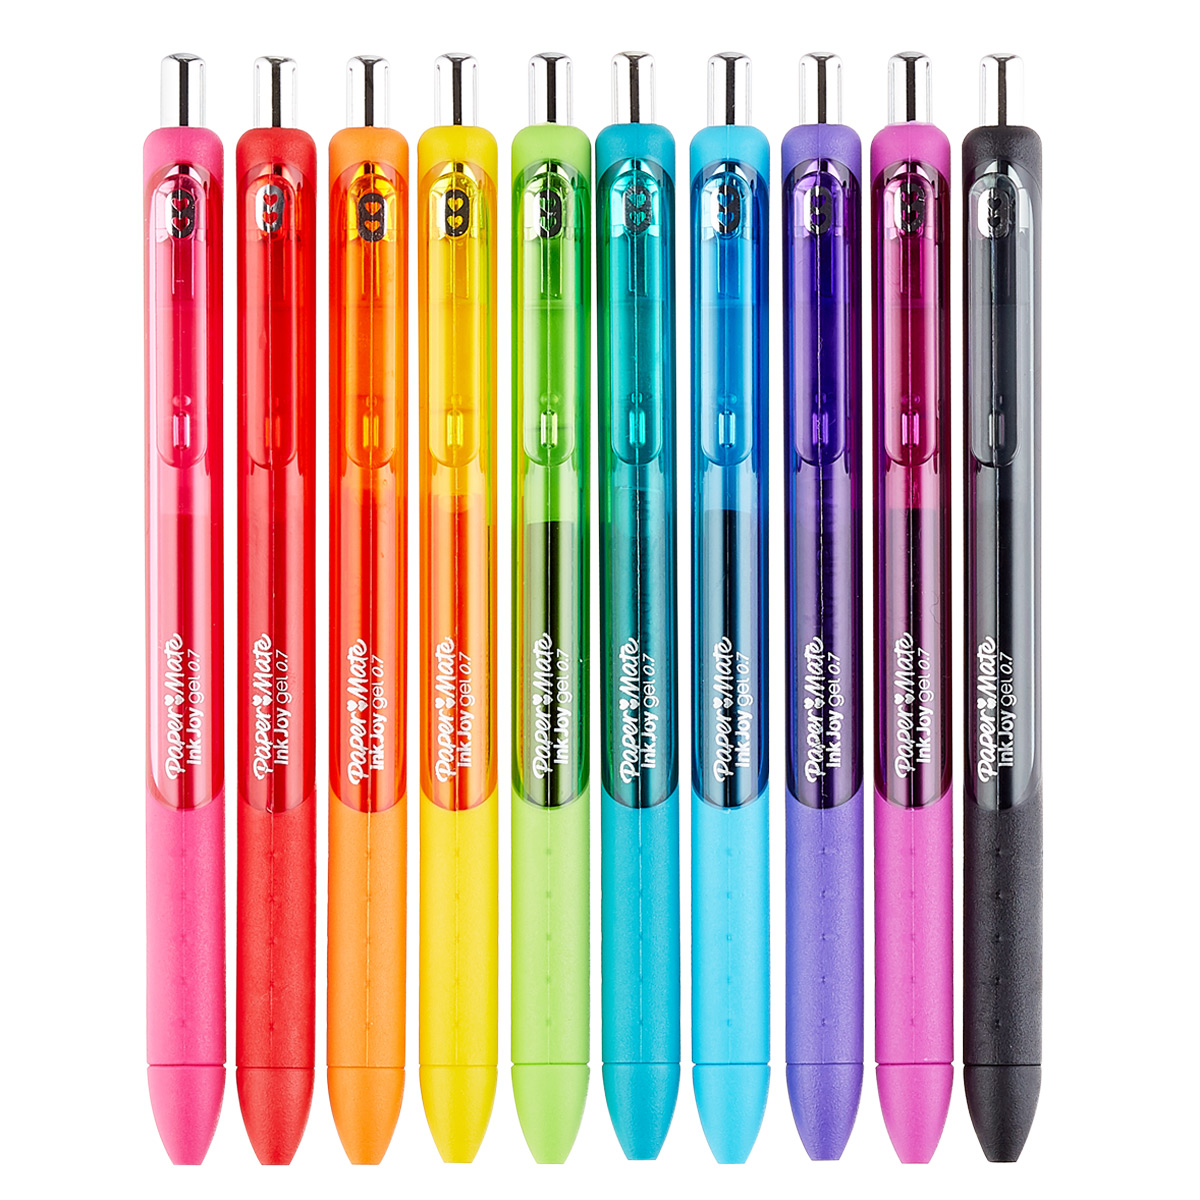 Paper Mate Inkjoy Gel Pen Set - Assorted Colors, Set of 30